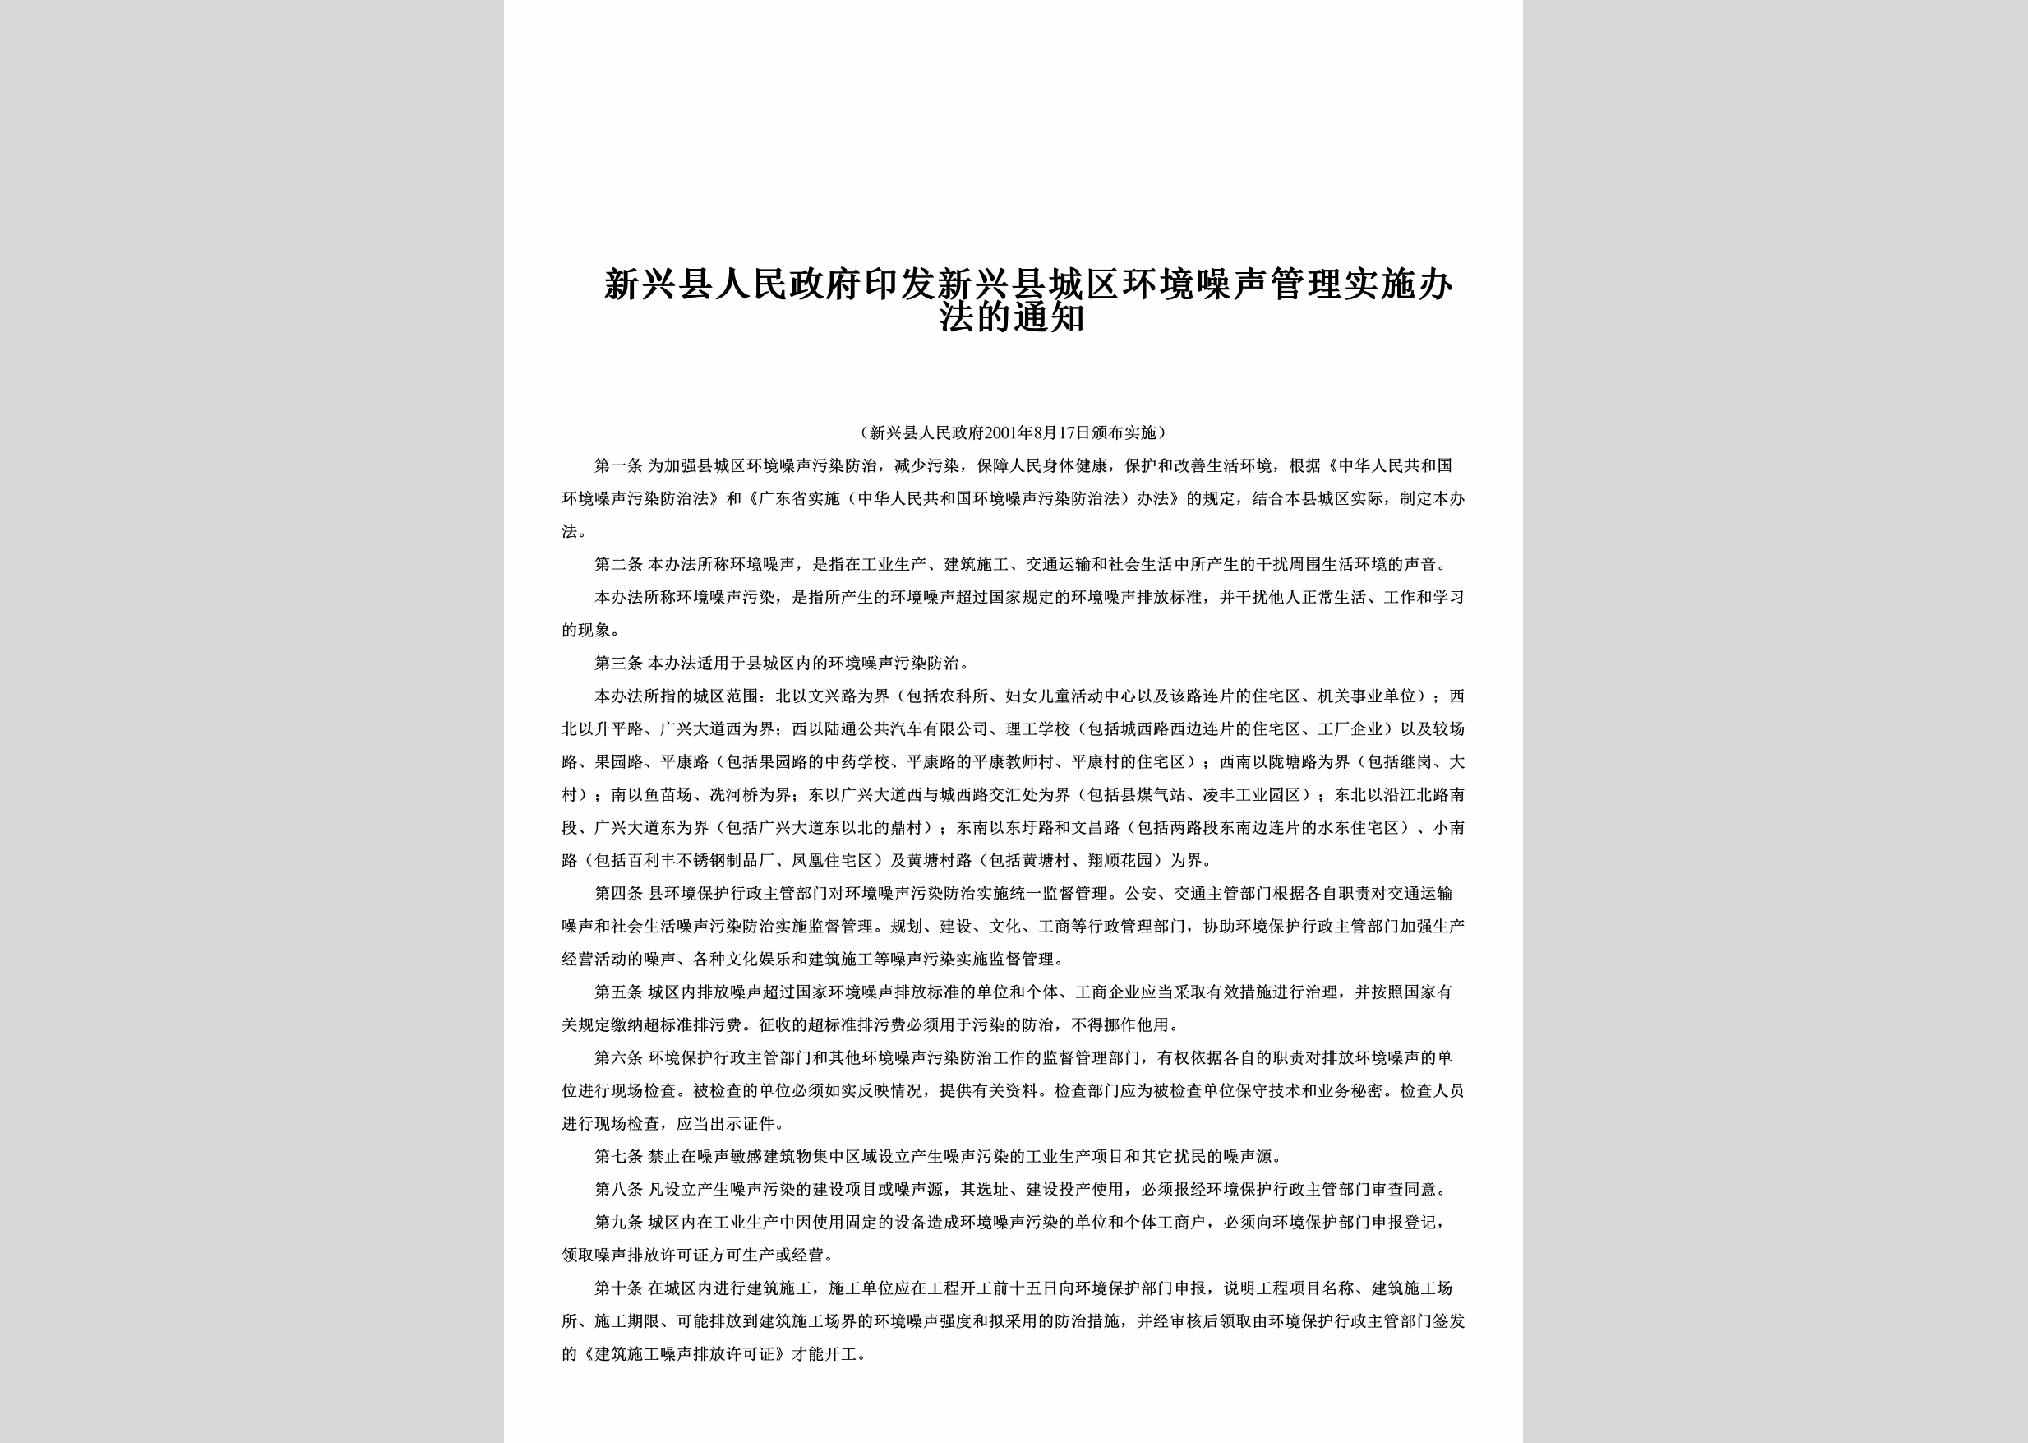 新府[2001]41号：印发新兴县城区环境噪声管理实施办法的通知